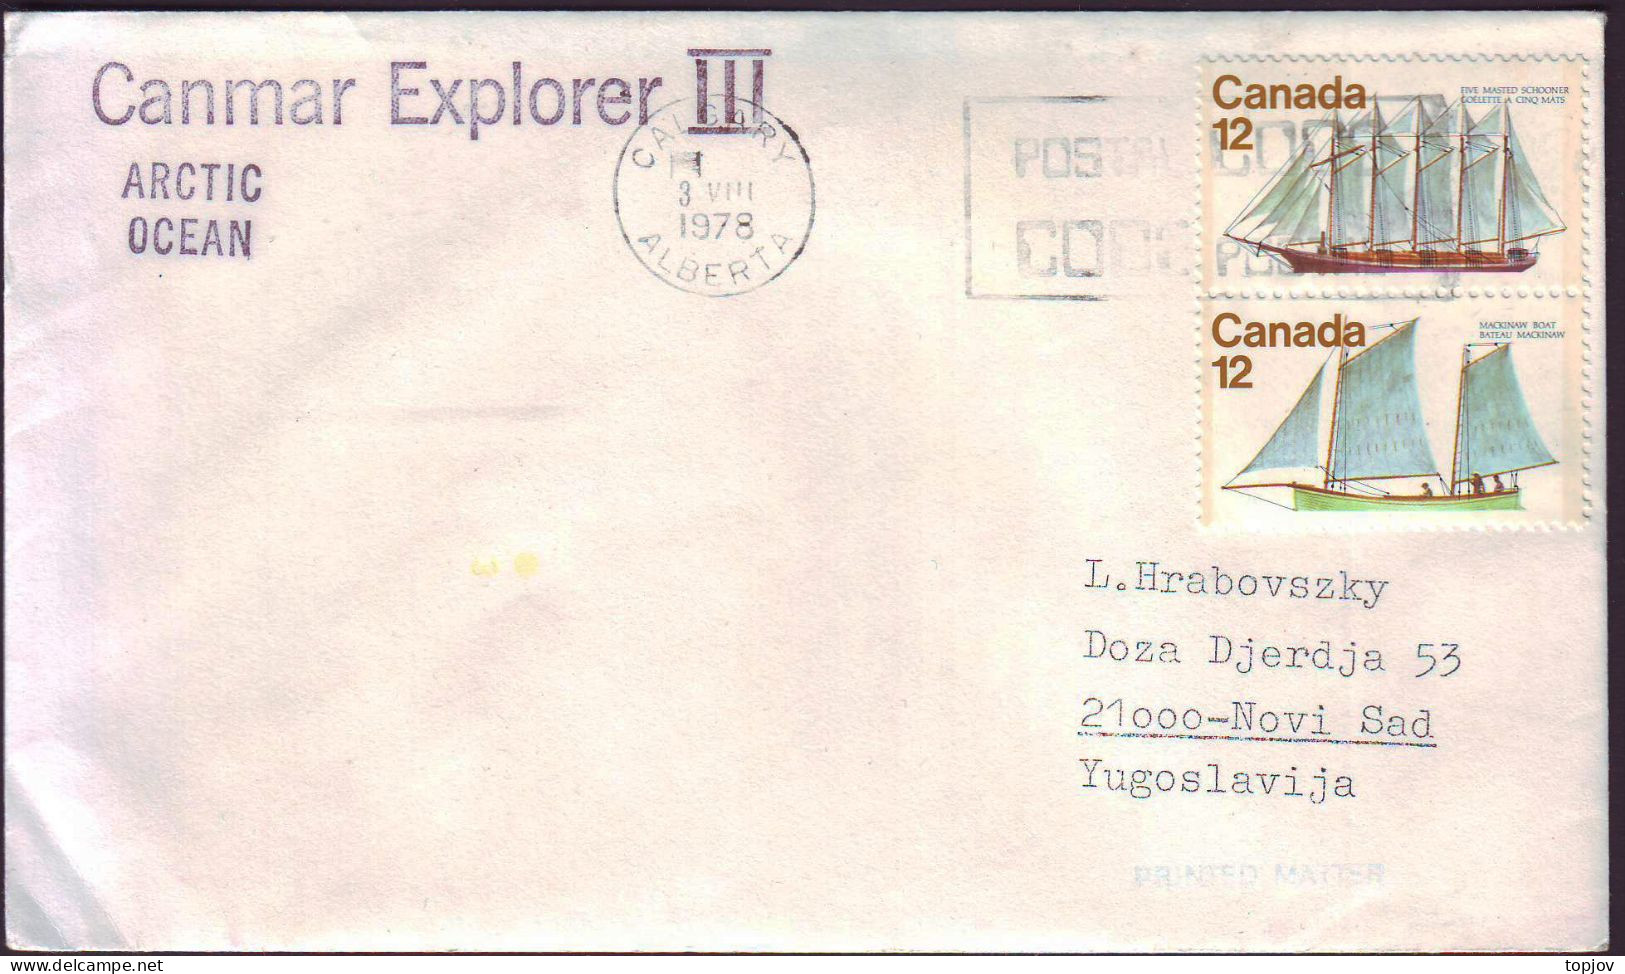 CANADA - CANMAR  EXPLORER  III  IN ARCTIC OCEAN - 1978 - Expediciones árticas